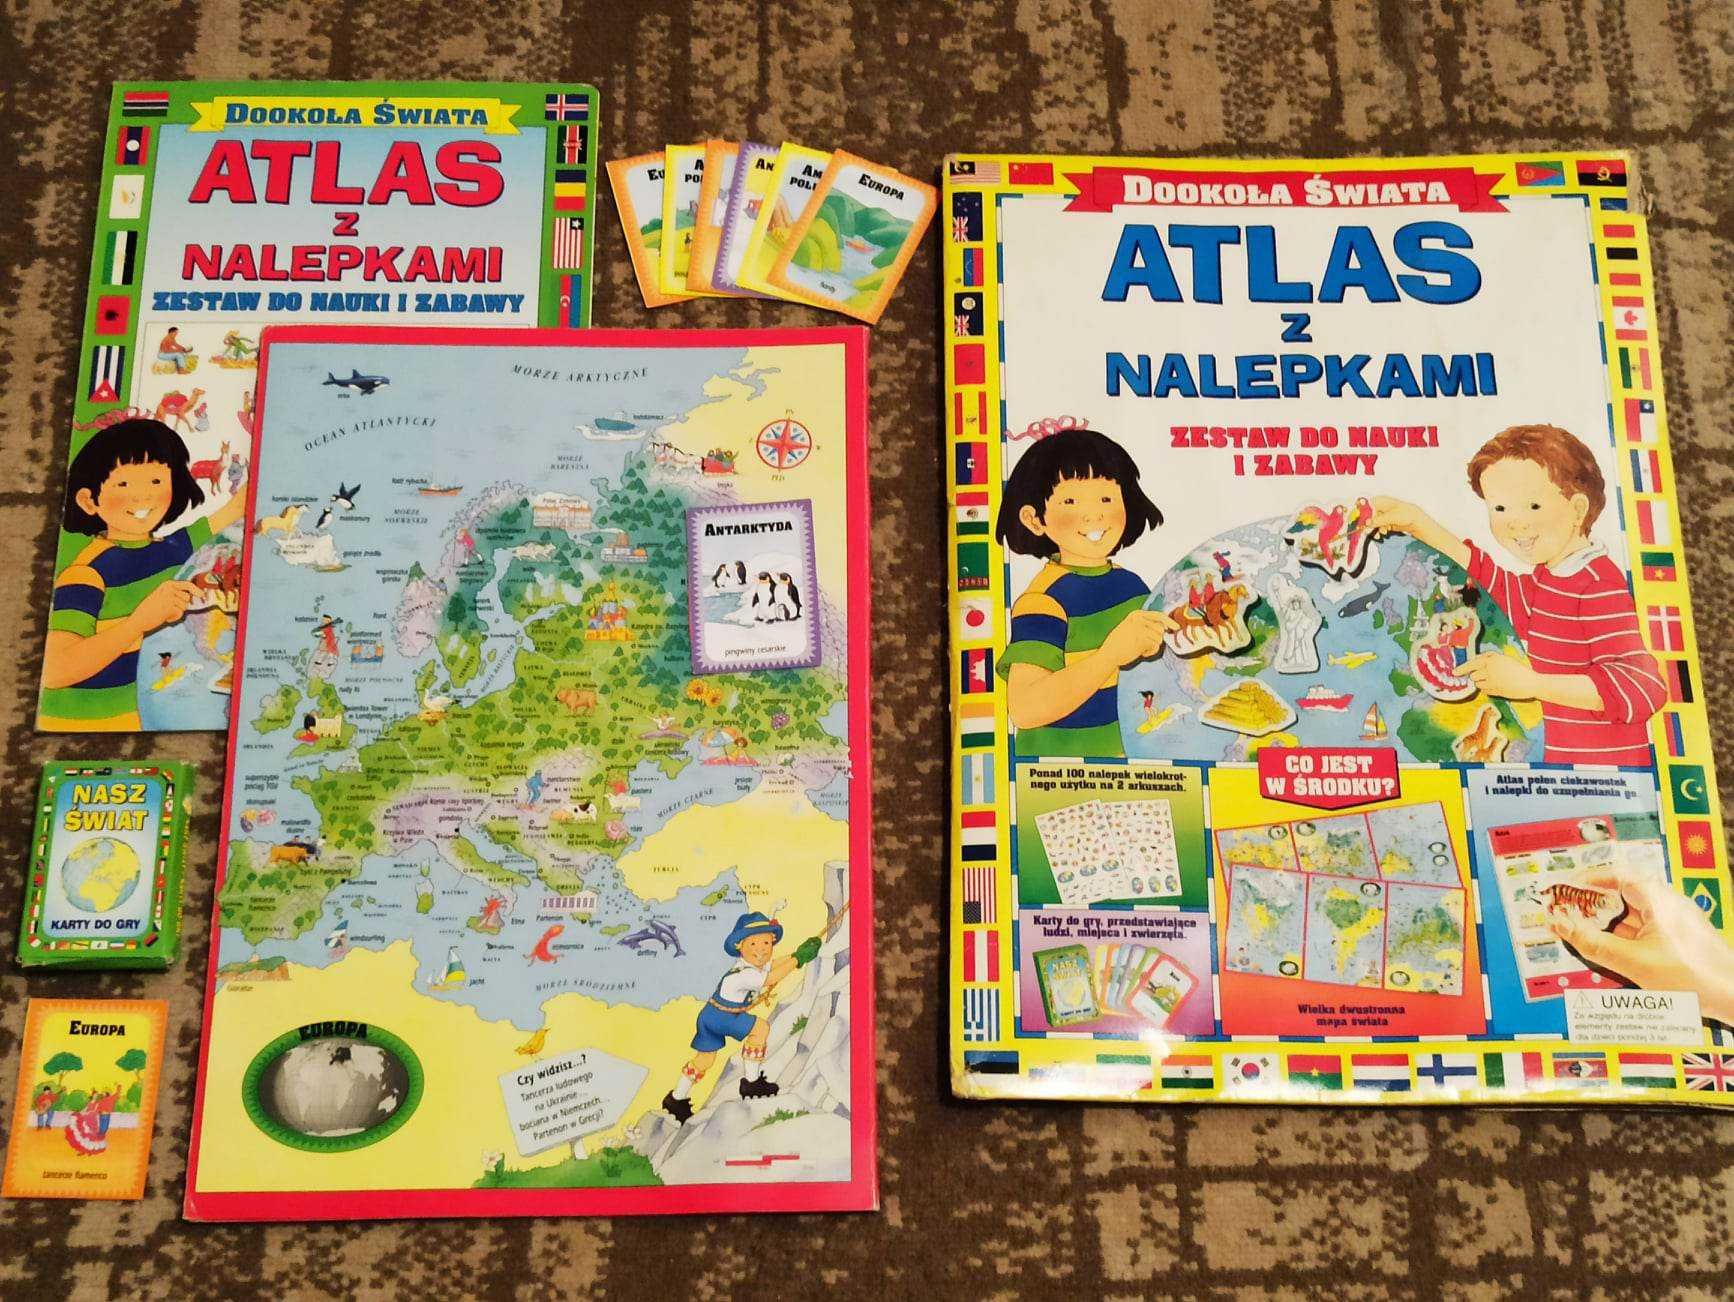 Atlas z nalepkami - zestaw do nauki i zabawy